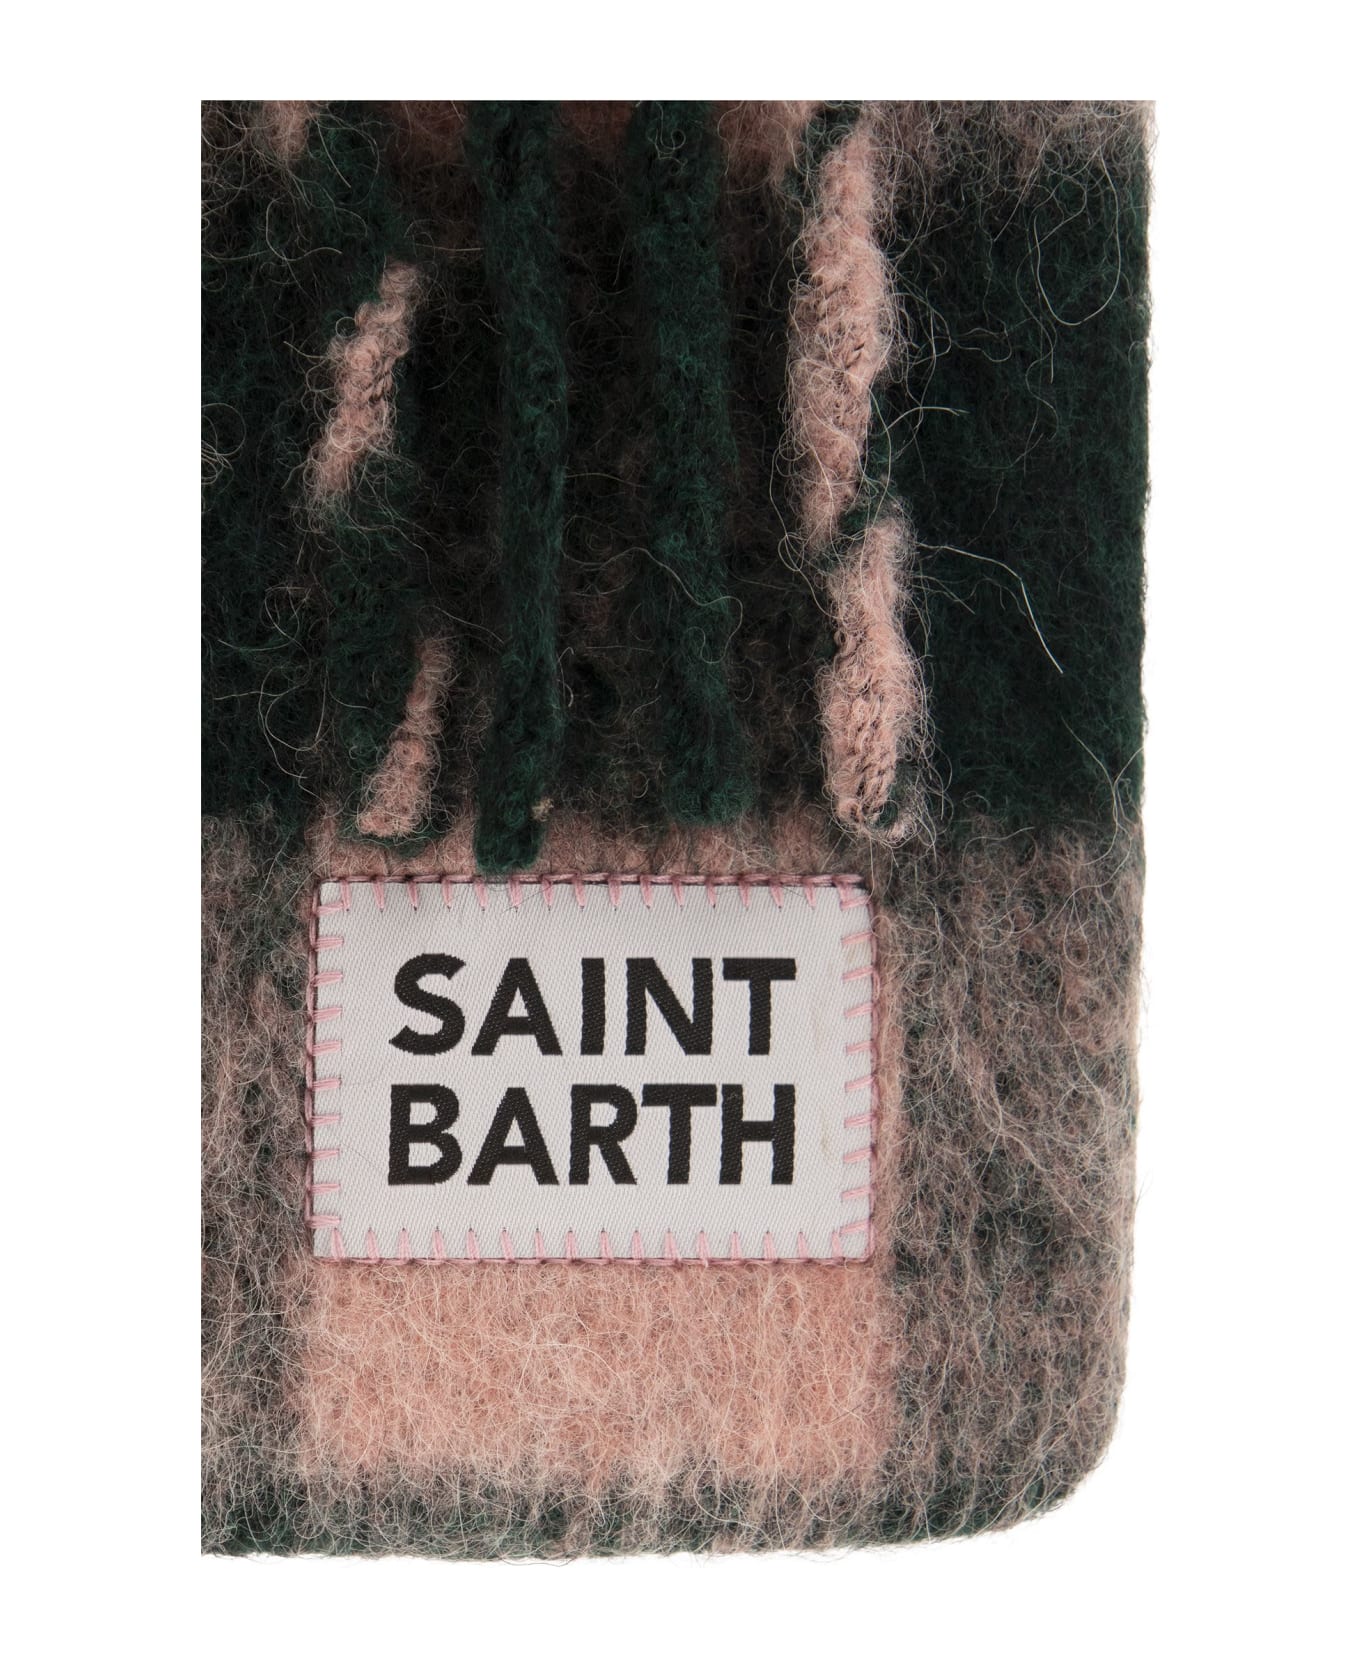 MC2 Saint Barth Fringe Clutch Bag With Shoulder Strap - Pink/green